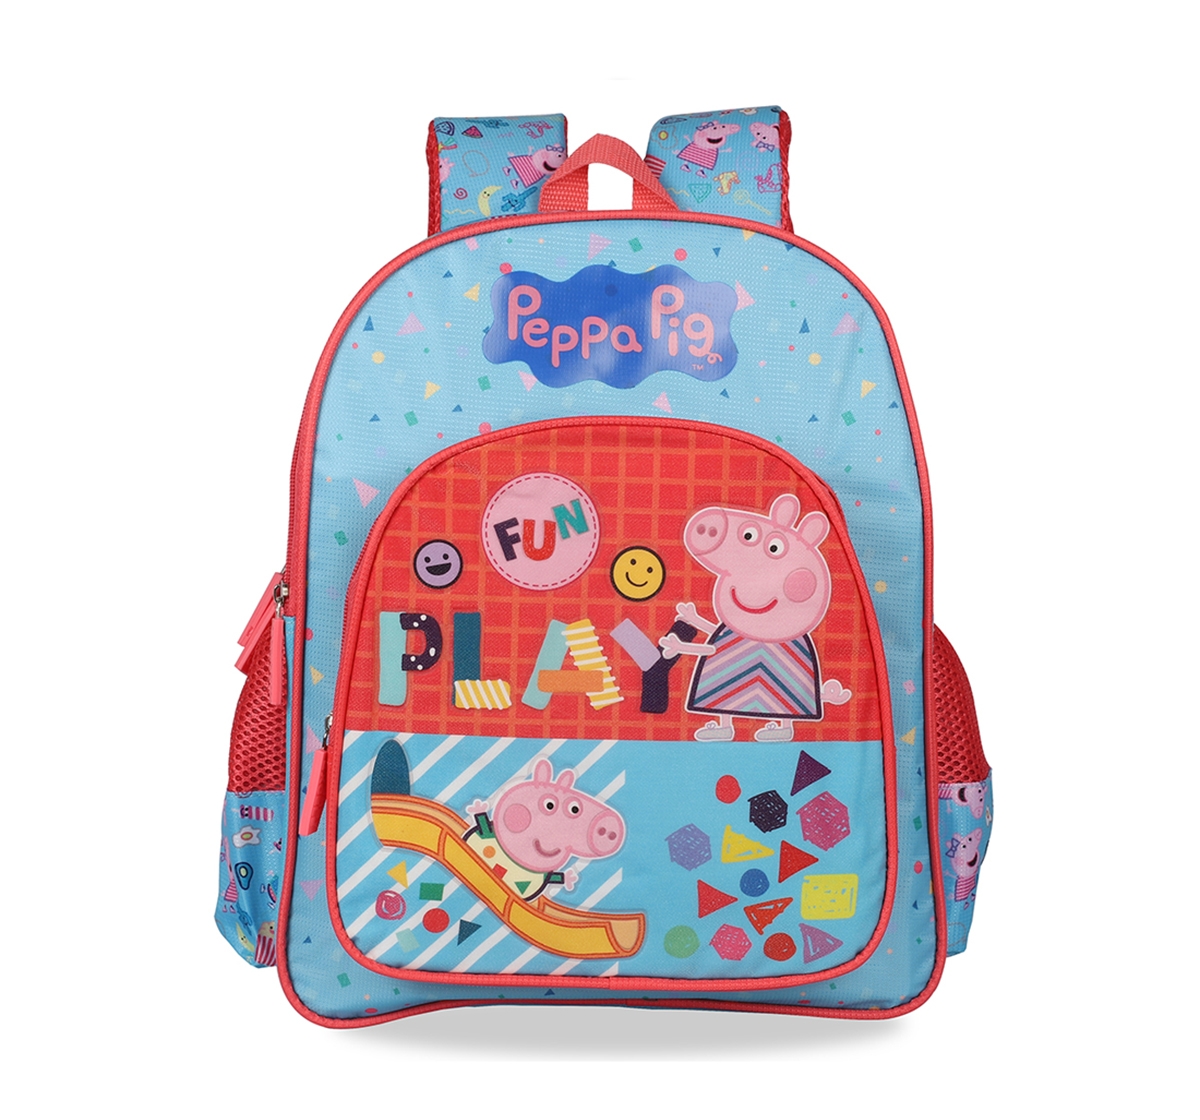 Peppa Pig |  Peppa Pig Fun Play School Bag 41 Cm for Kids age 7Y+  0